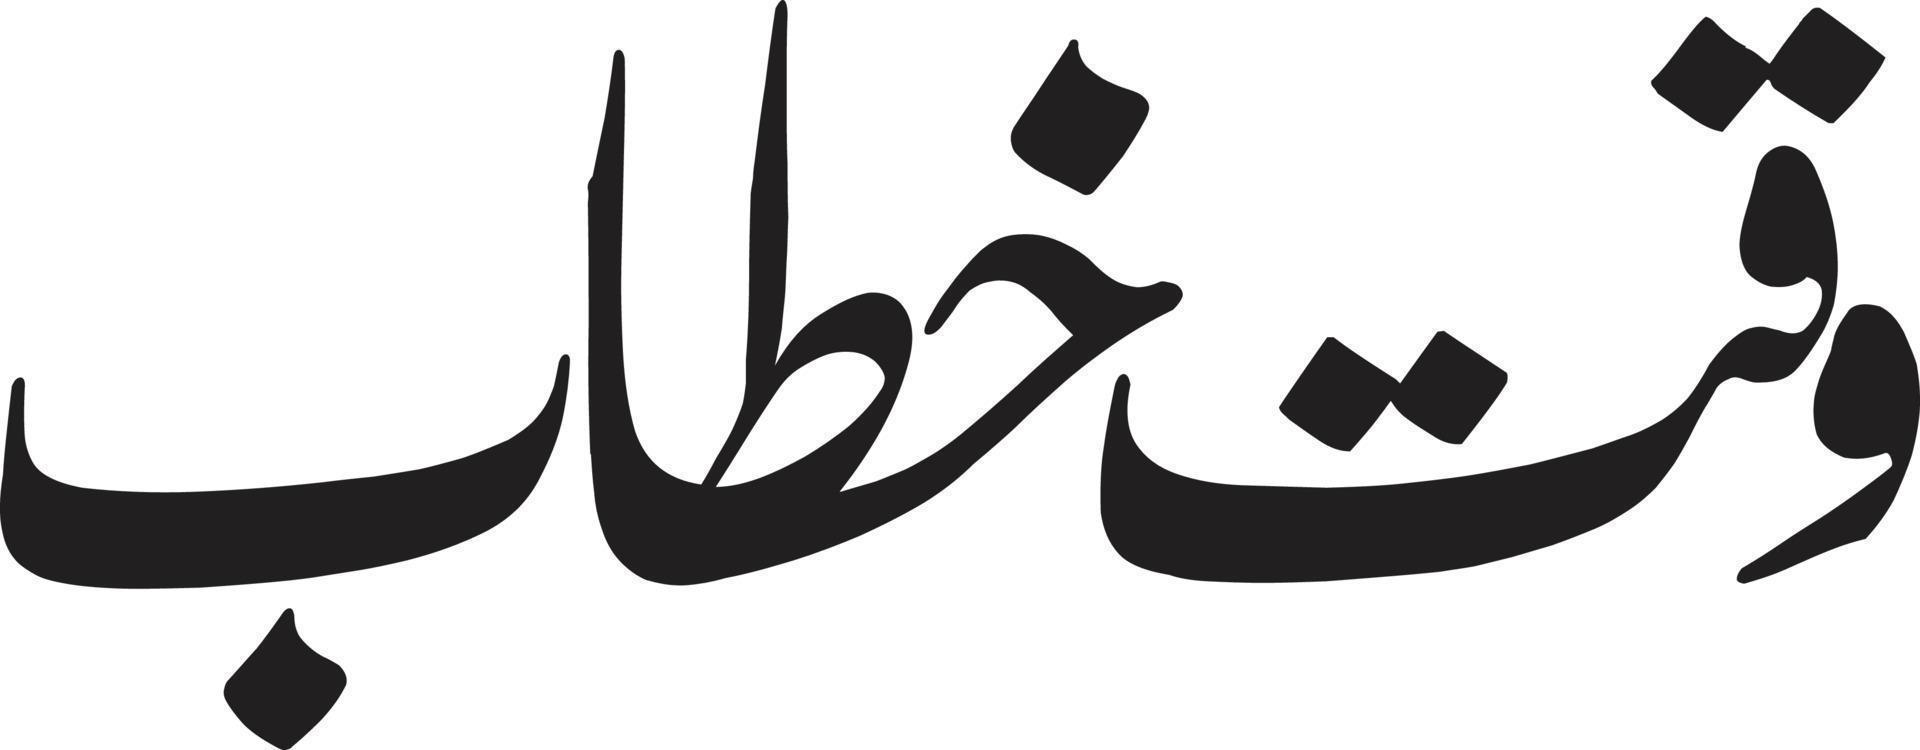 waqat khtab titolo islamico urdu Arabo calligrafia gratuito vettore